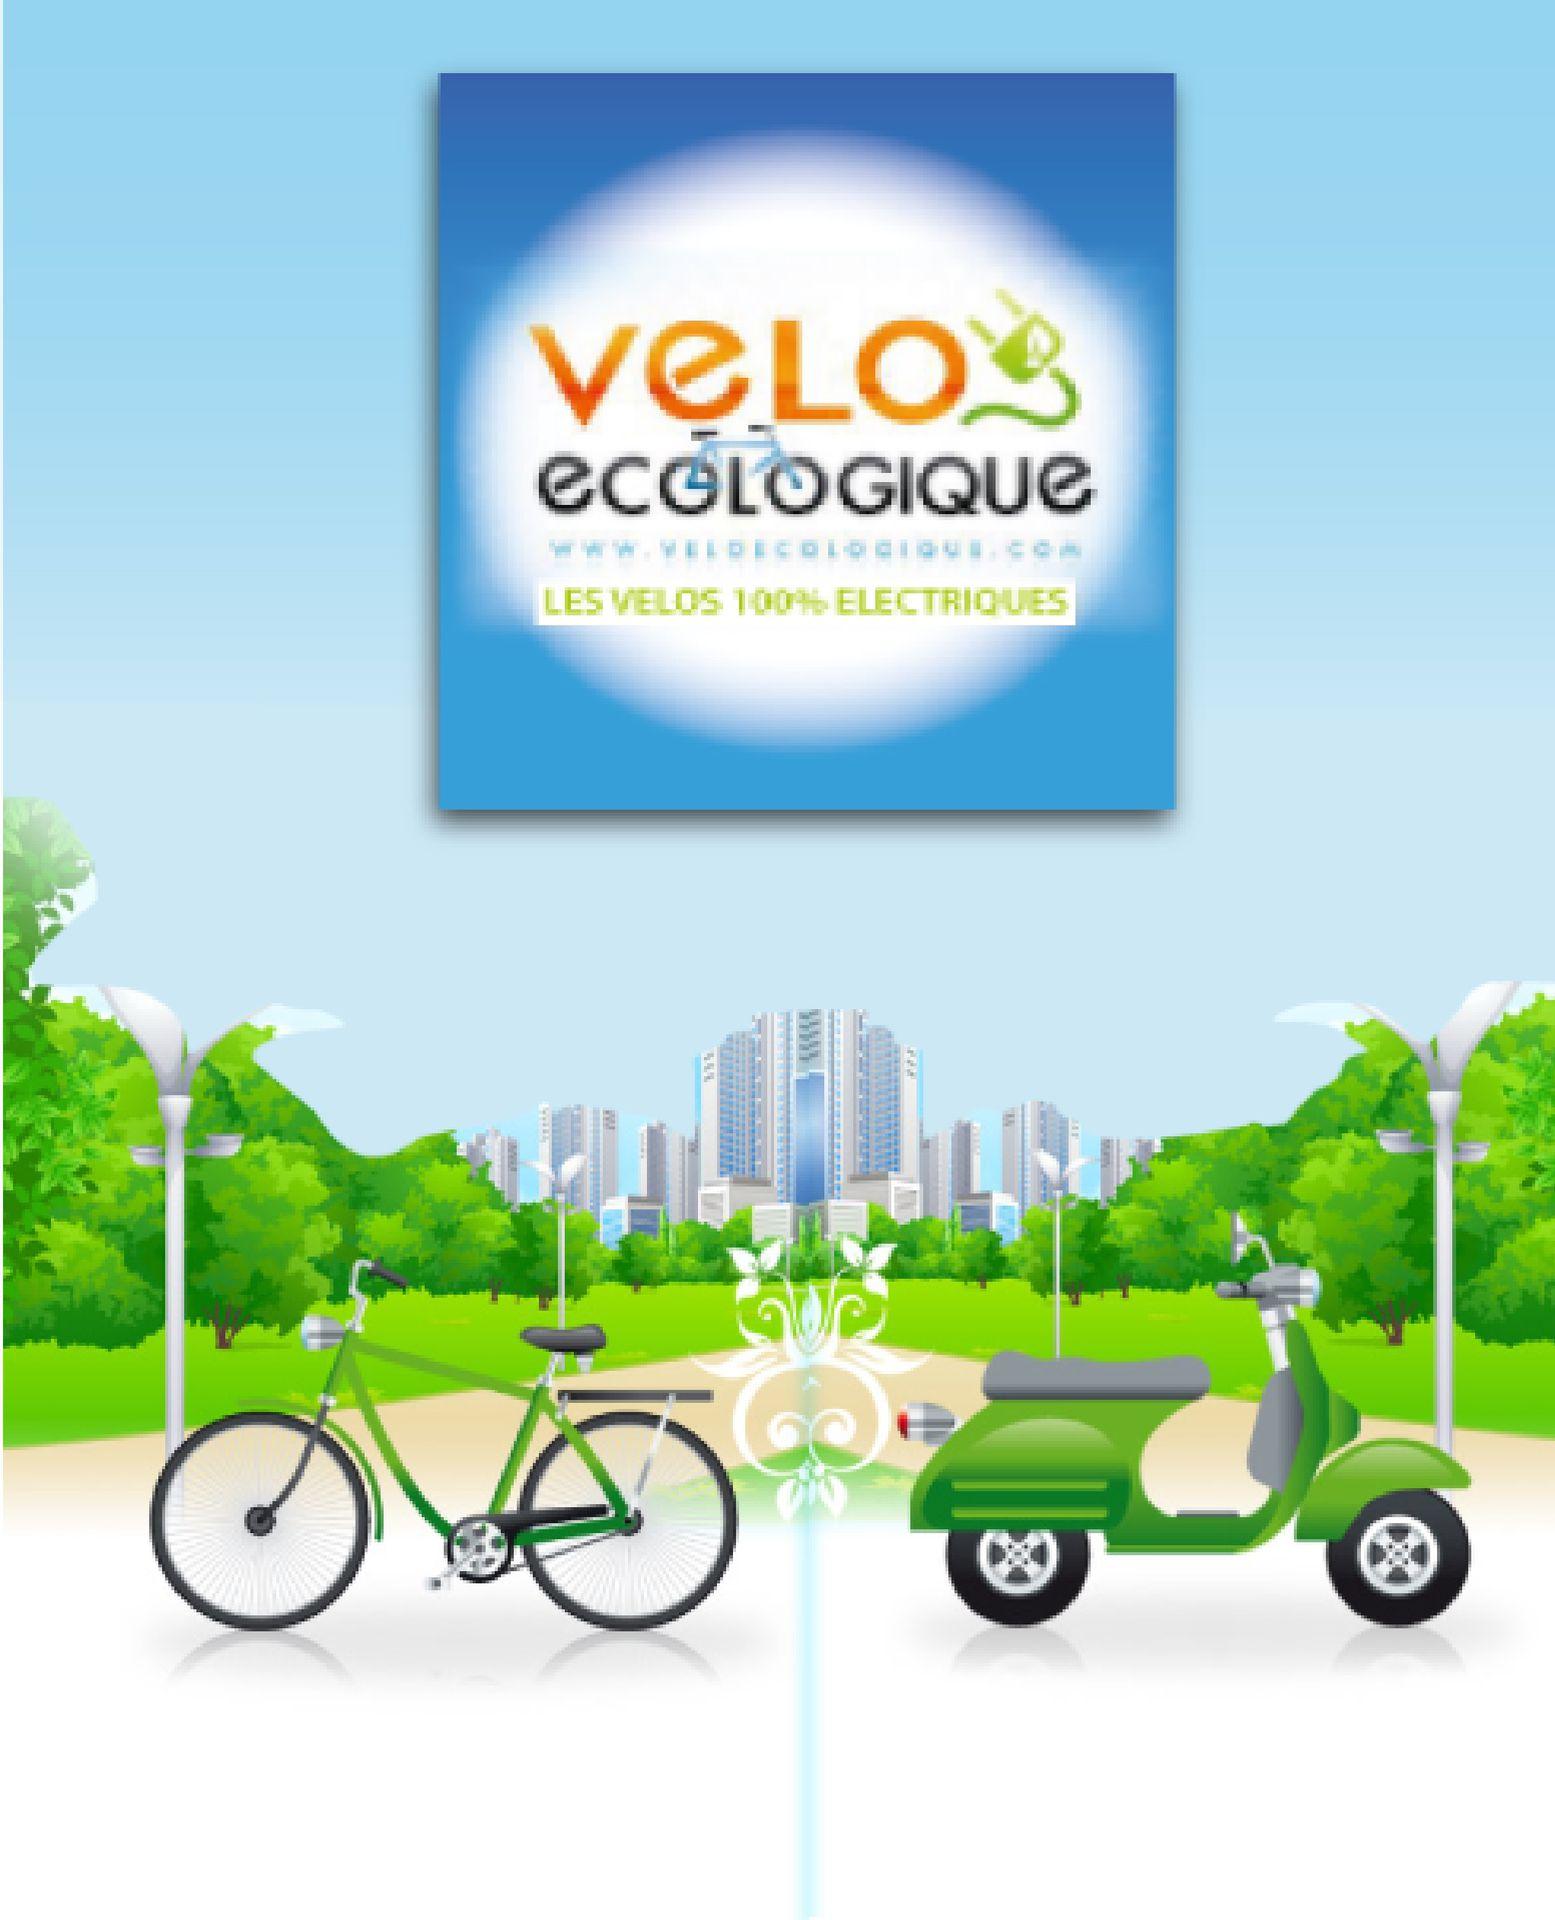 Vélo Ecologique Carqueiranne